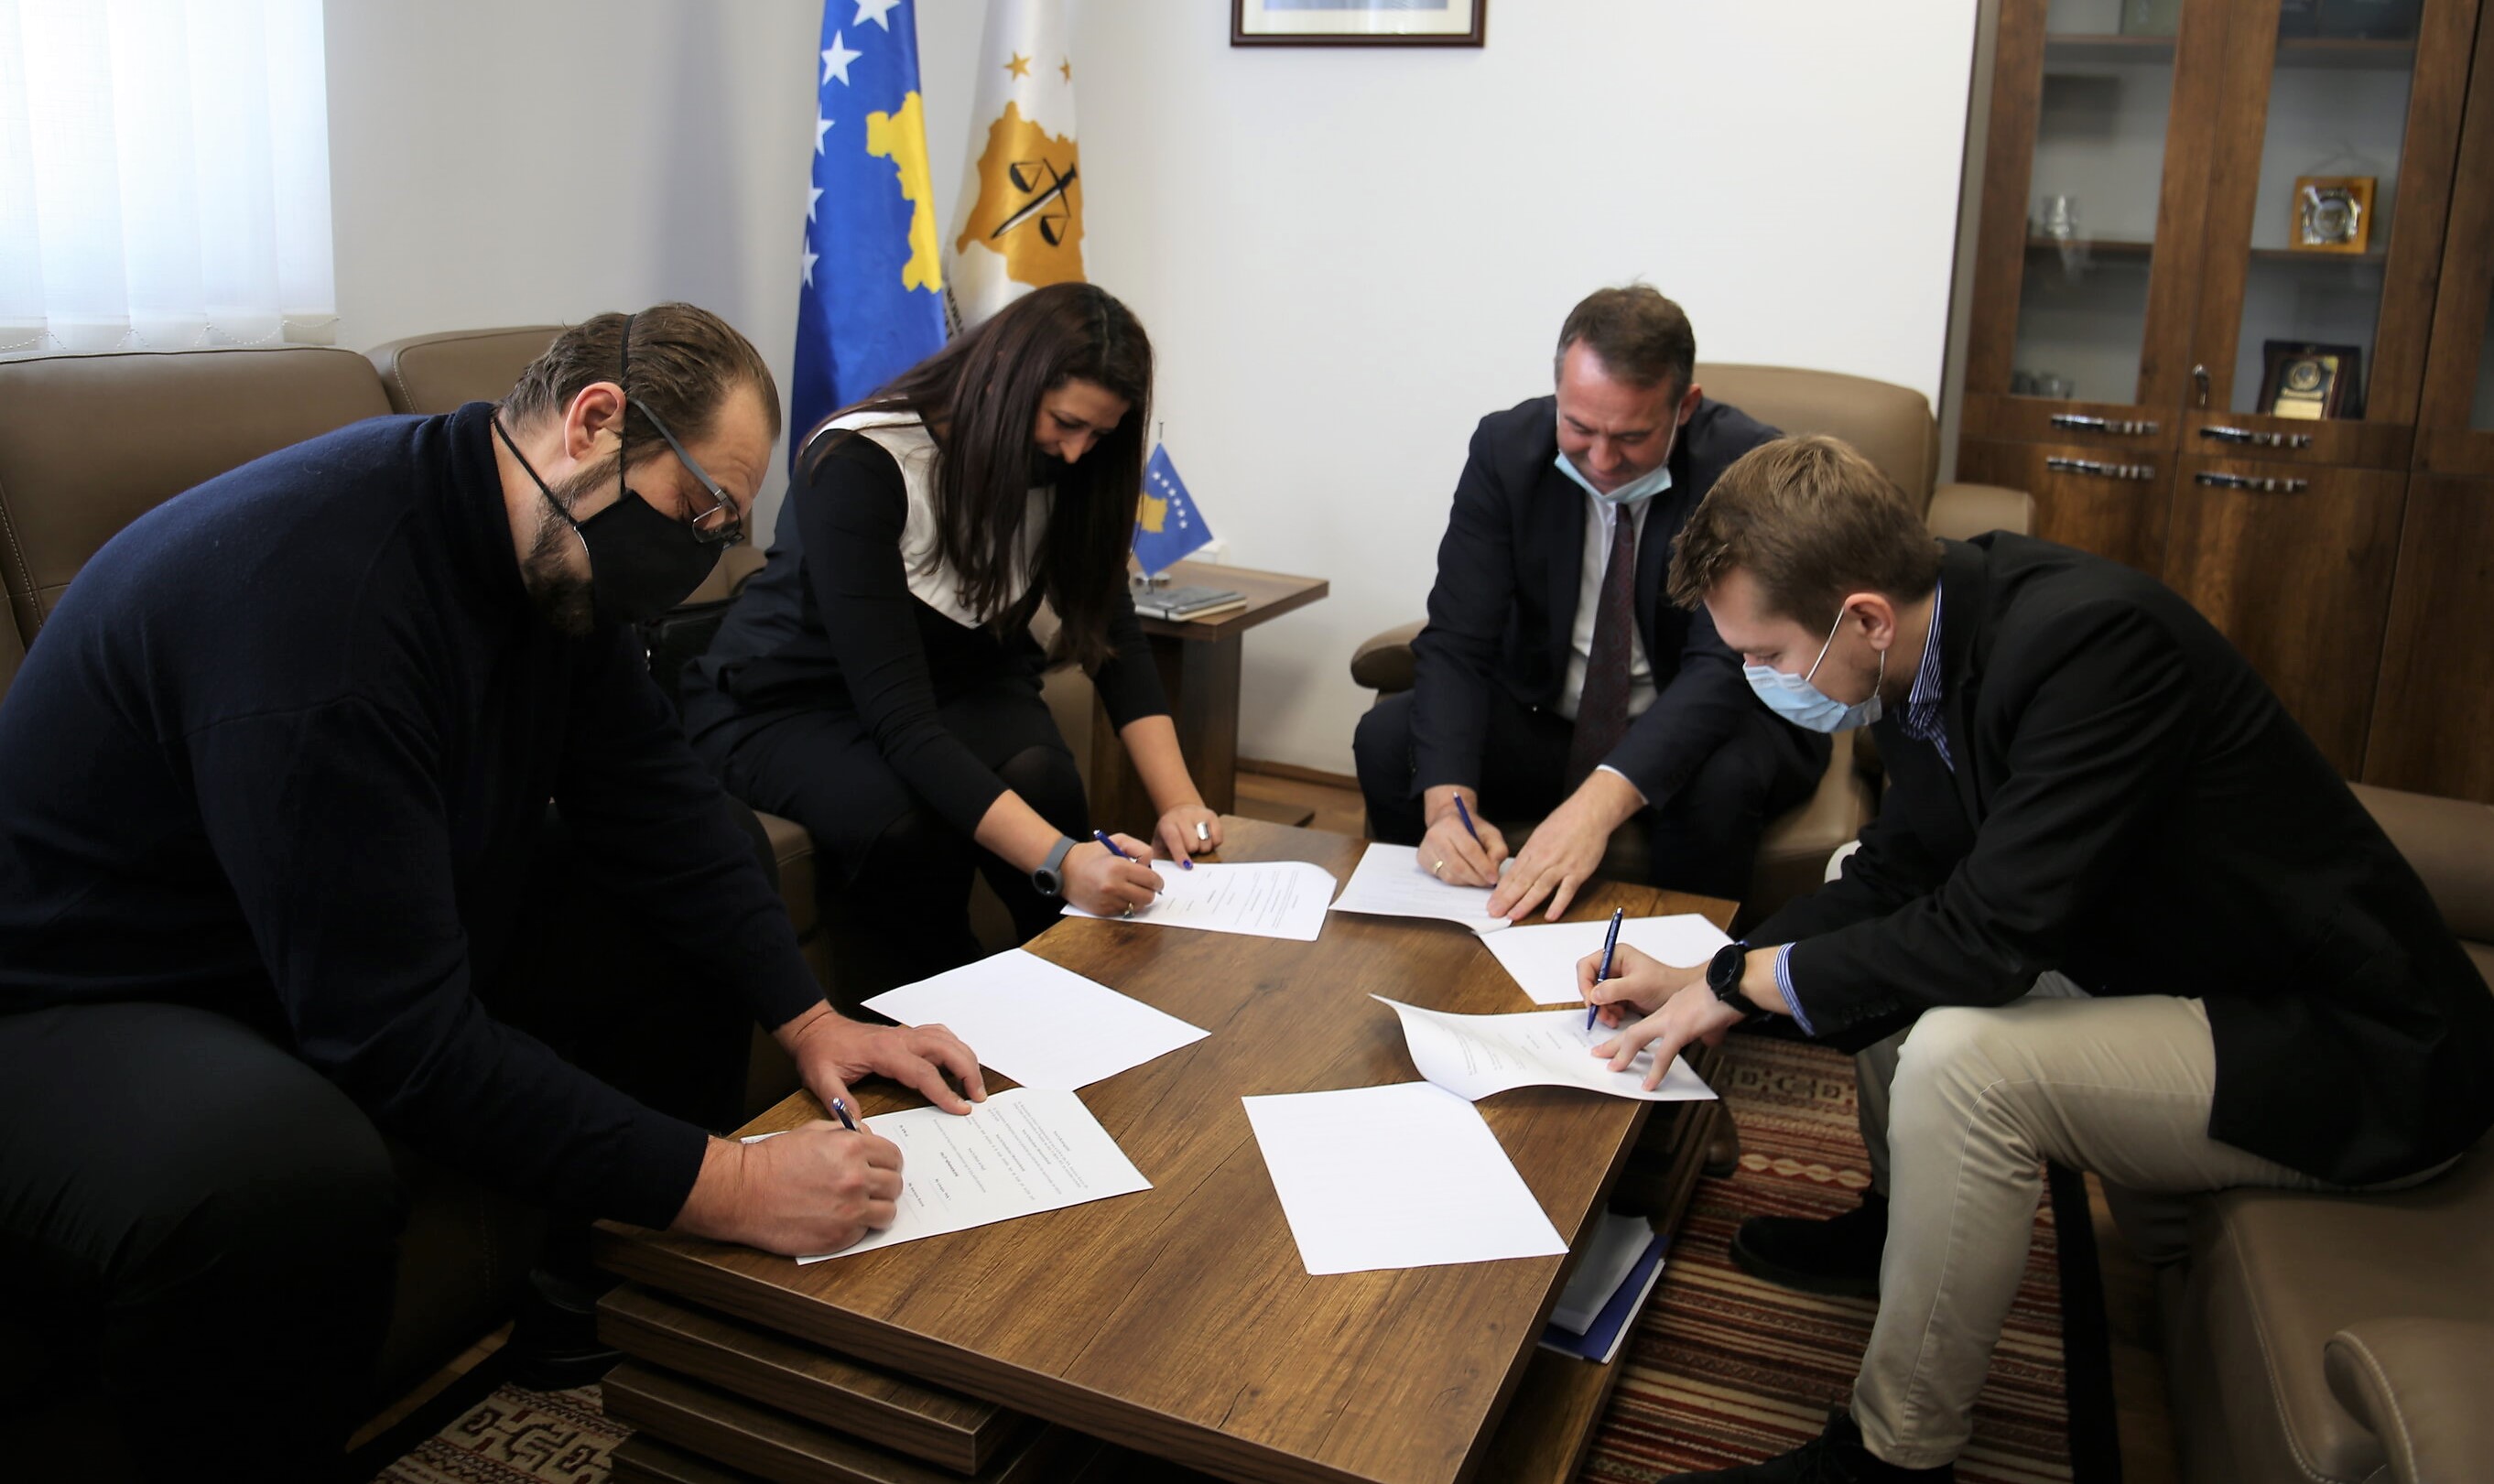 TSK, FOL, Internews Kosova i Debate Center potpisali su memorandum sporazuma